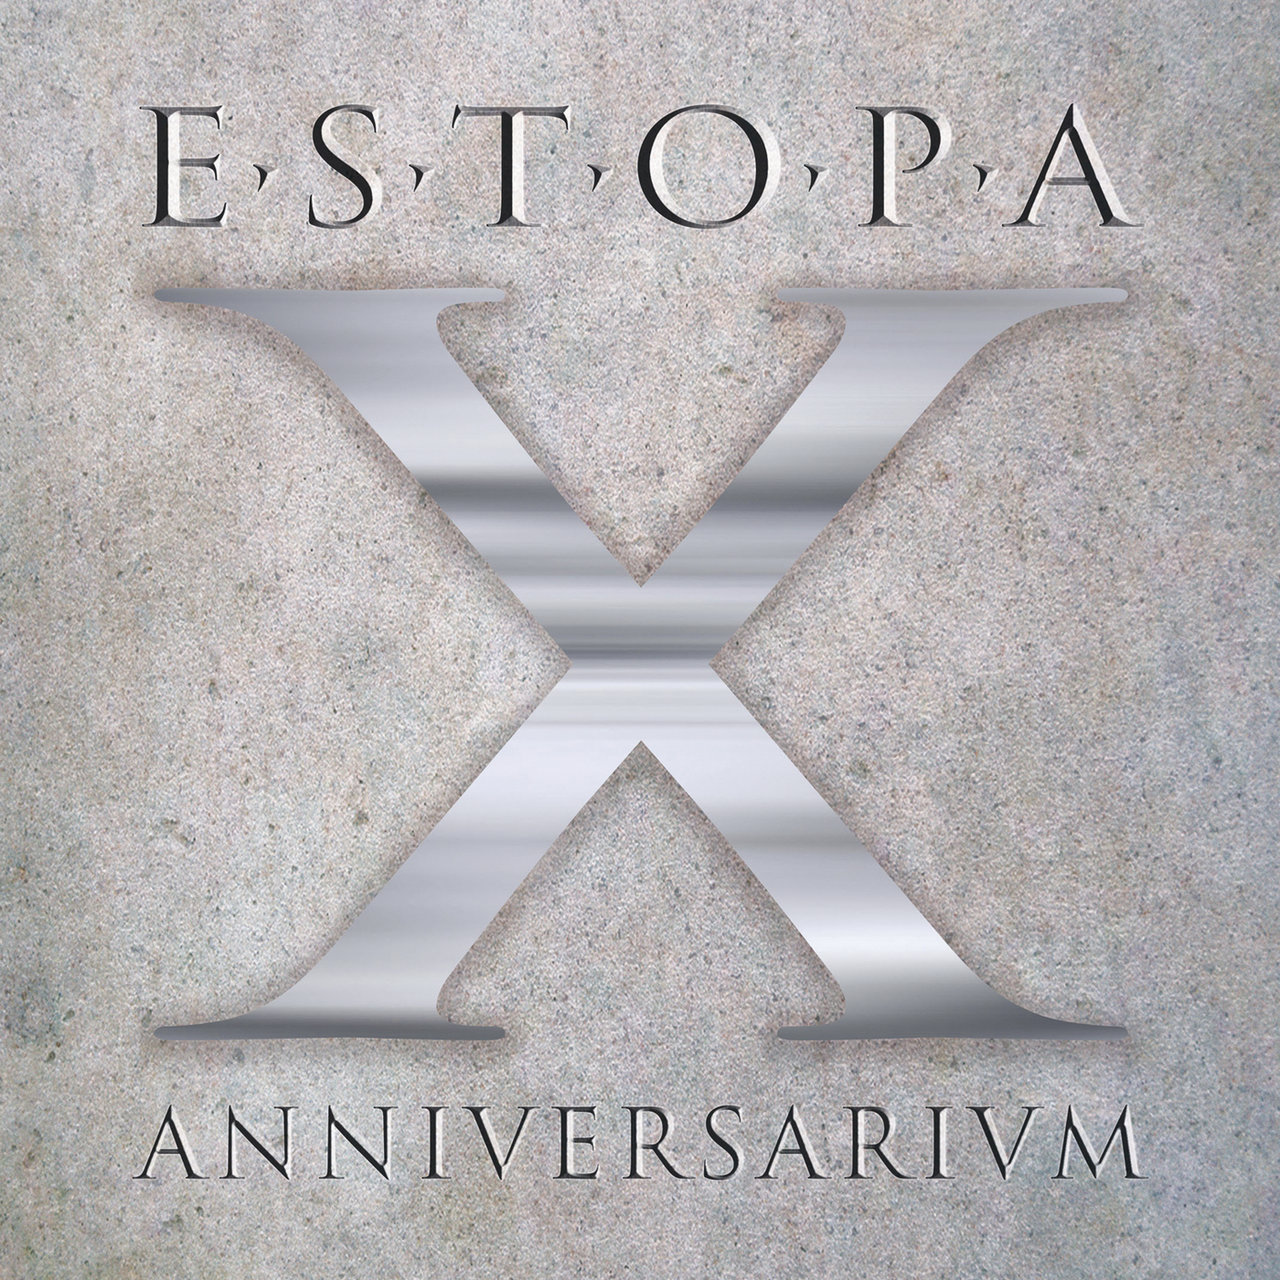 Estopa X Anniversarivm cover artwork